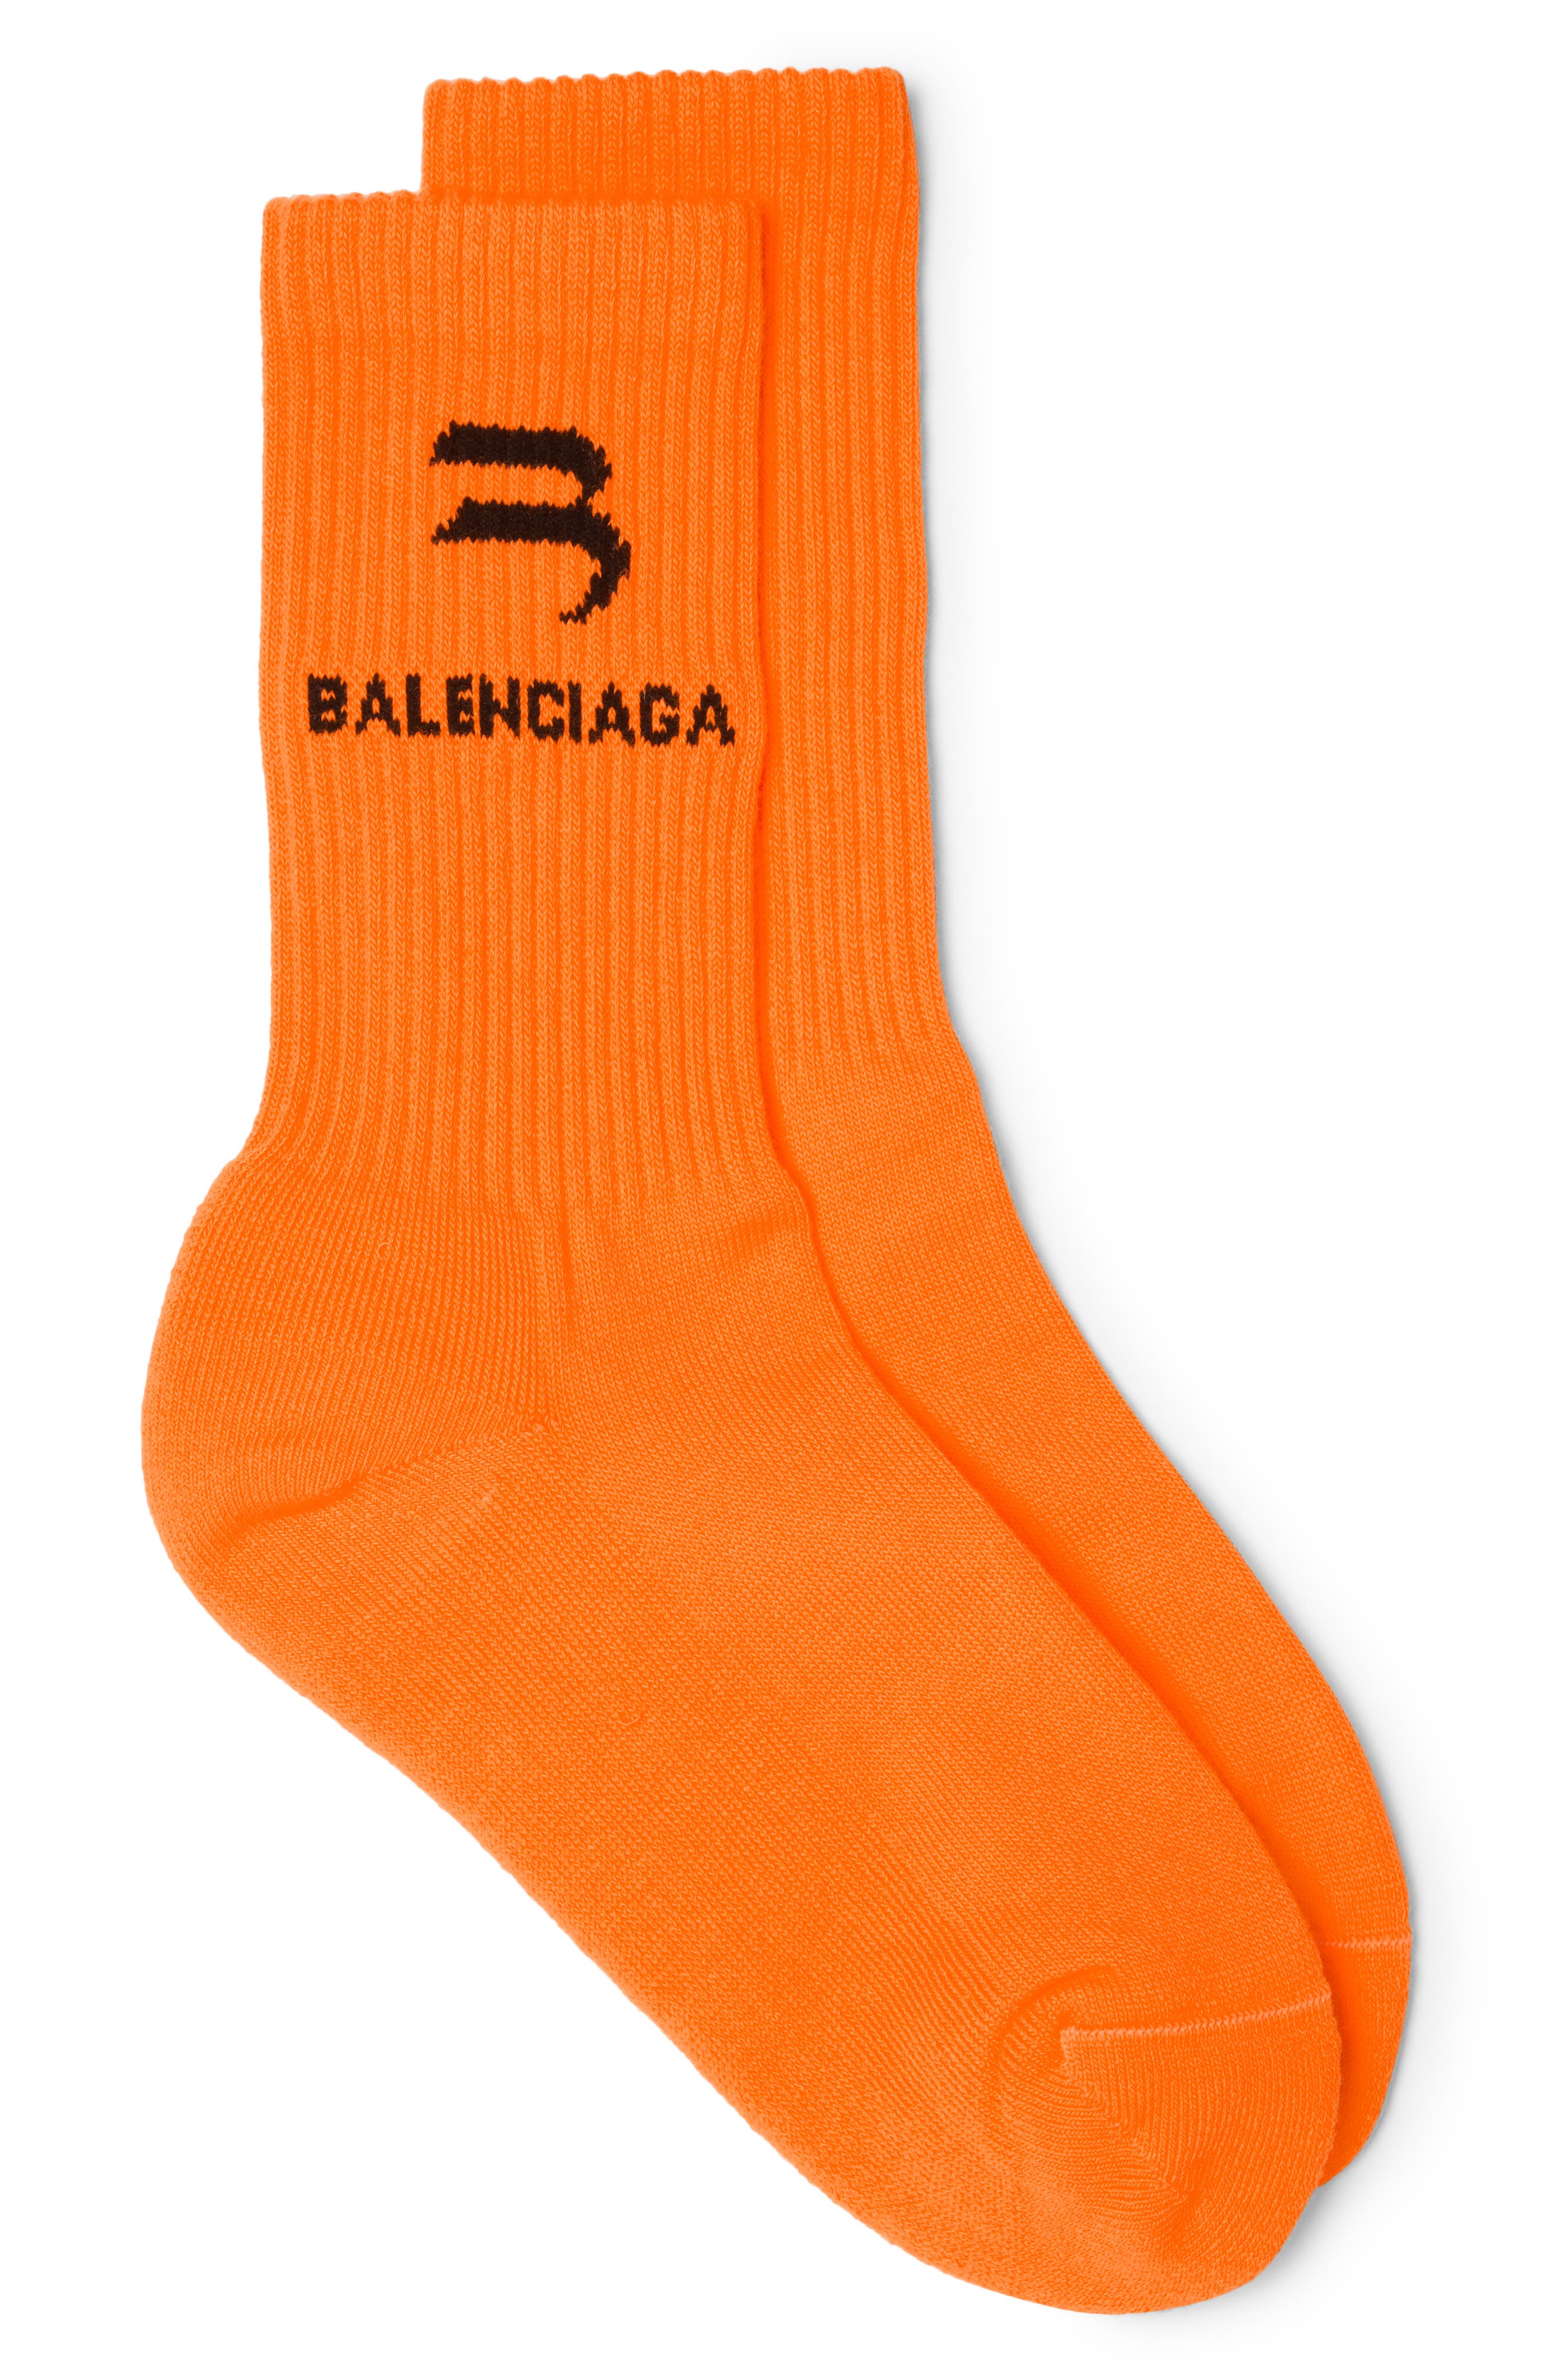 Balenciaga Logo Socks in Orange/Black at Nordstrom, Size Large